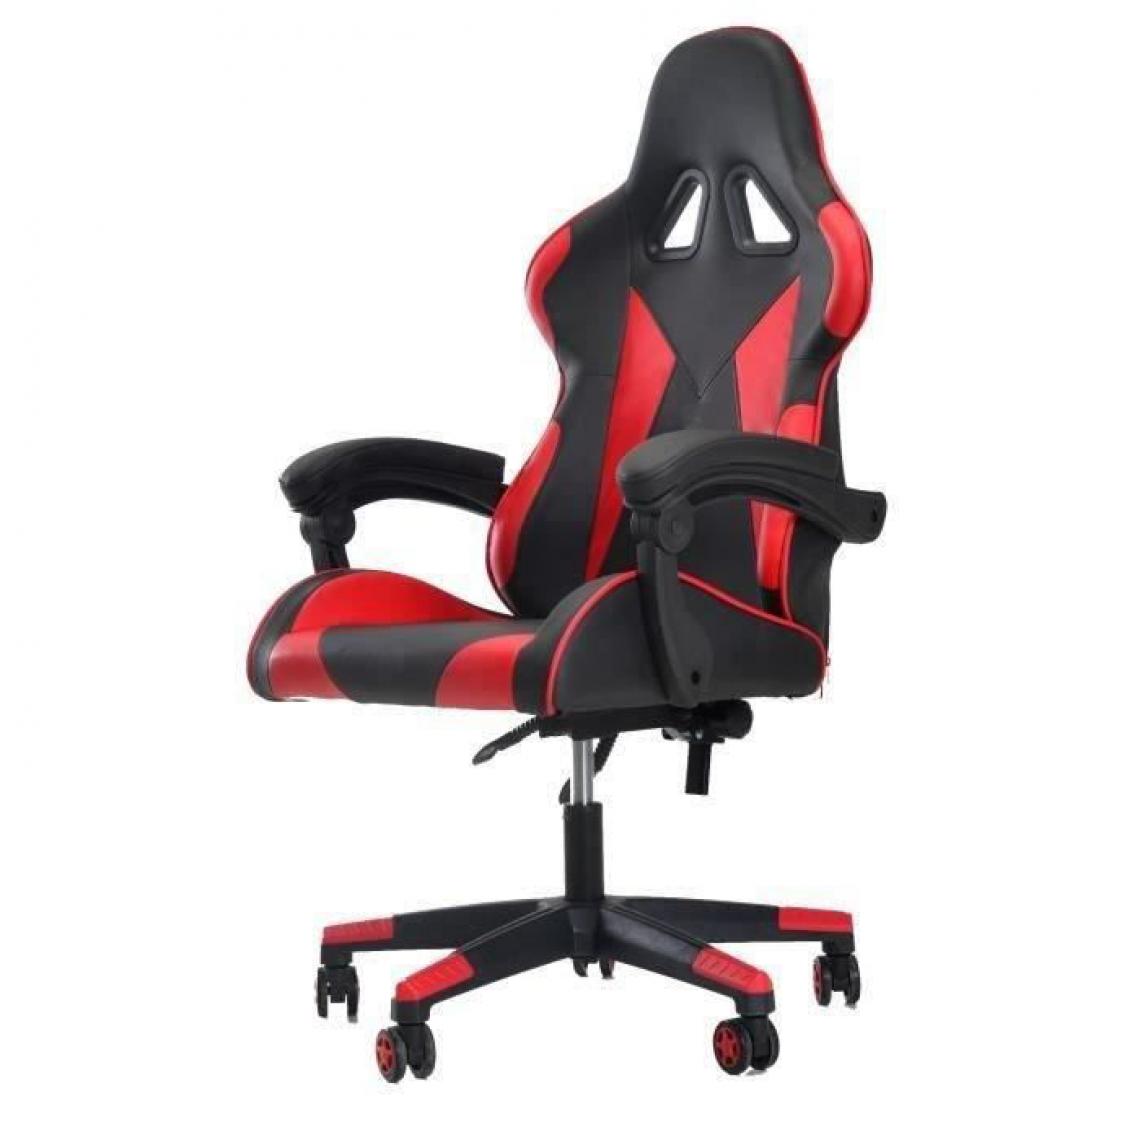 Cstore - Chaise de bureau gaming - Simili noir et rouge - L 76 x P 50 x H123-132 cm - KAOS - Chaises